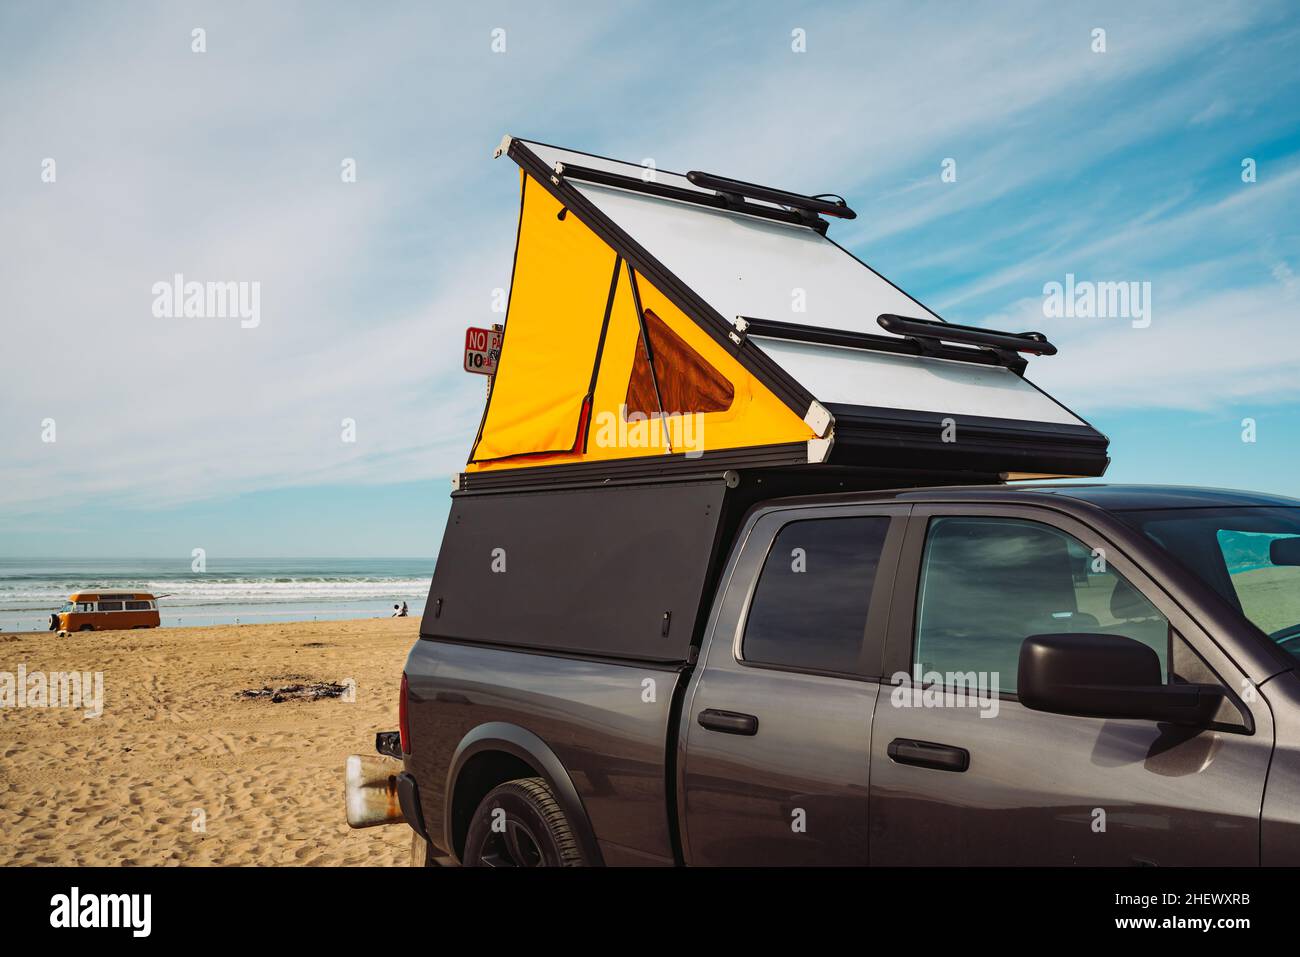 Auto Dachzelt für Camping. Auto auf Parkplatz in der Nähe des Strandes mit  leichtem Wohnmobil-Autozelt auf einem Dach, wolkig Himmel Hintergrund  Stockfotografie - Alamy